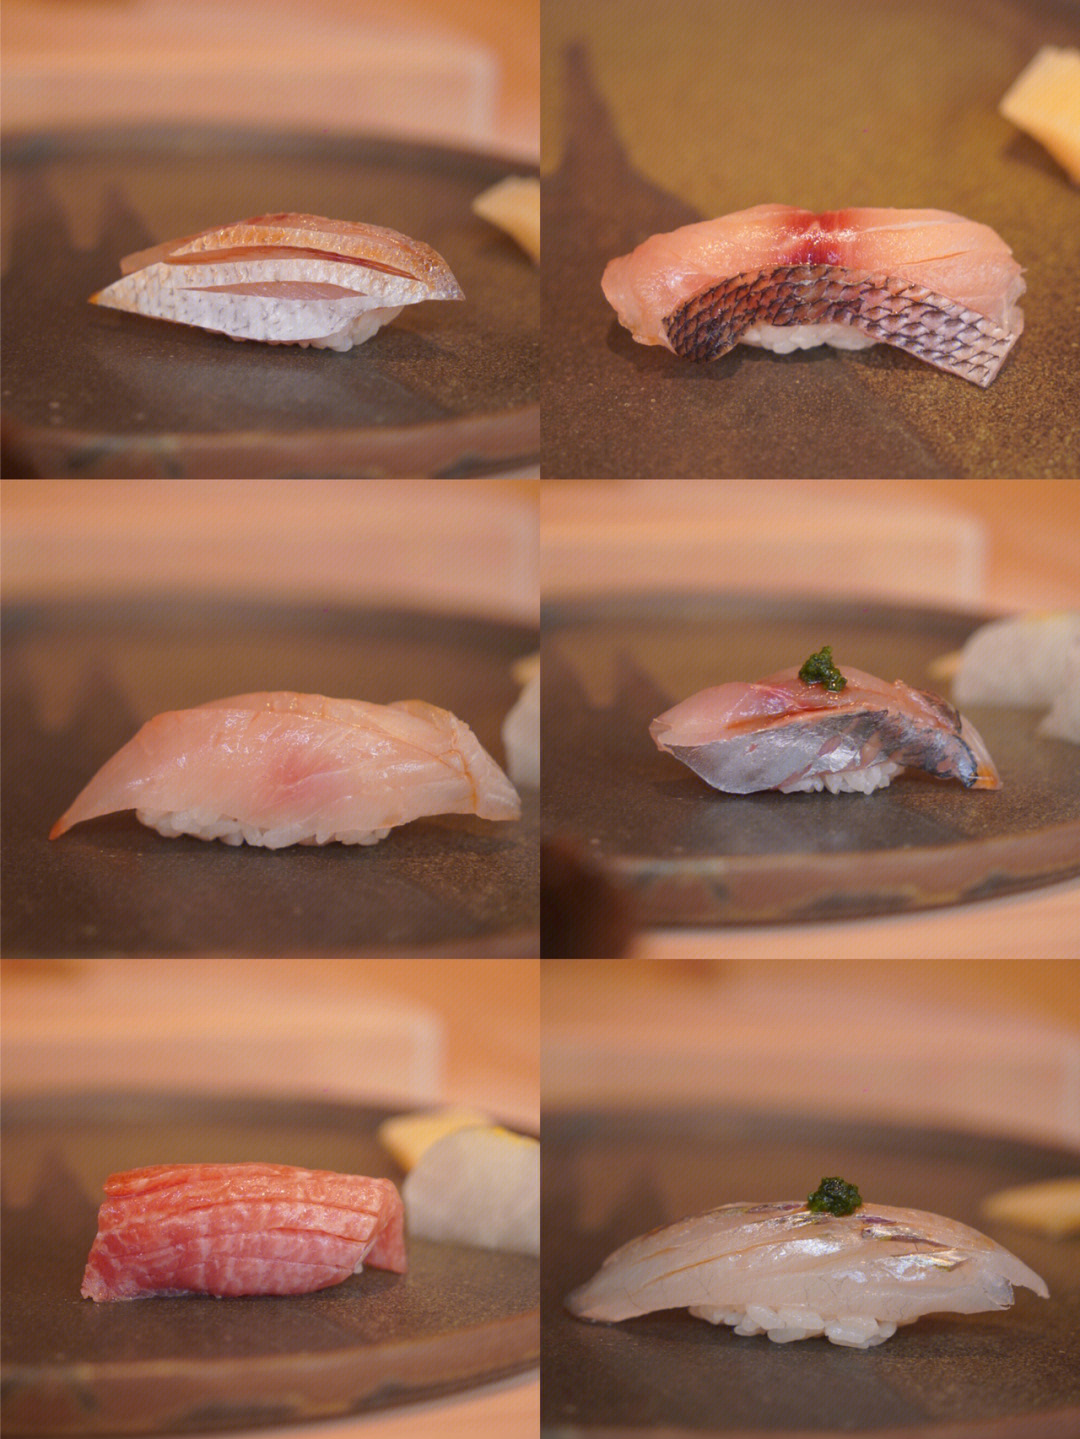 棒了三道前菜,八贯寿司前菜里印象最深的就是「飞鱼刺身」配上紫苏花